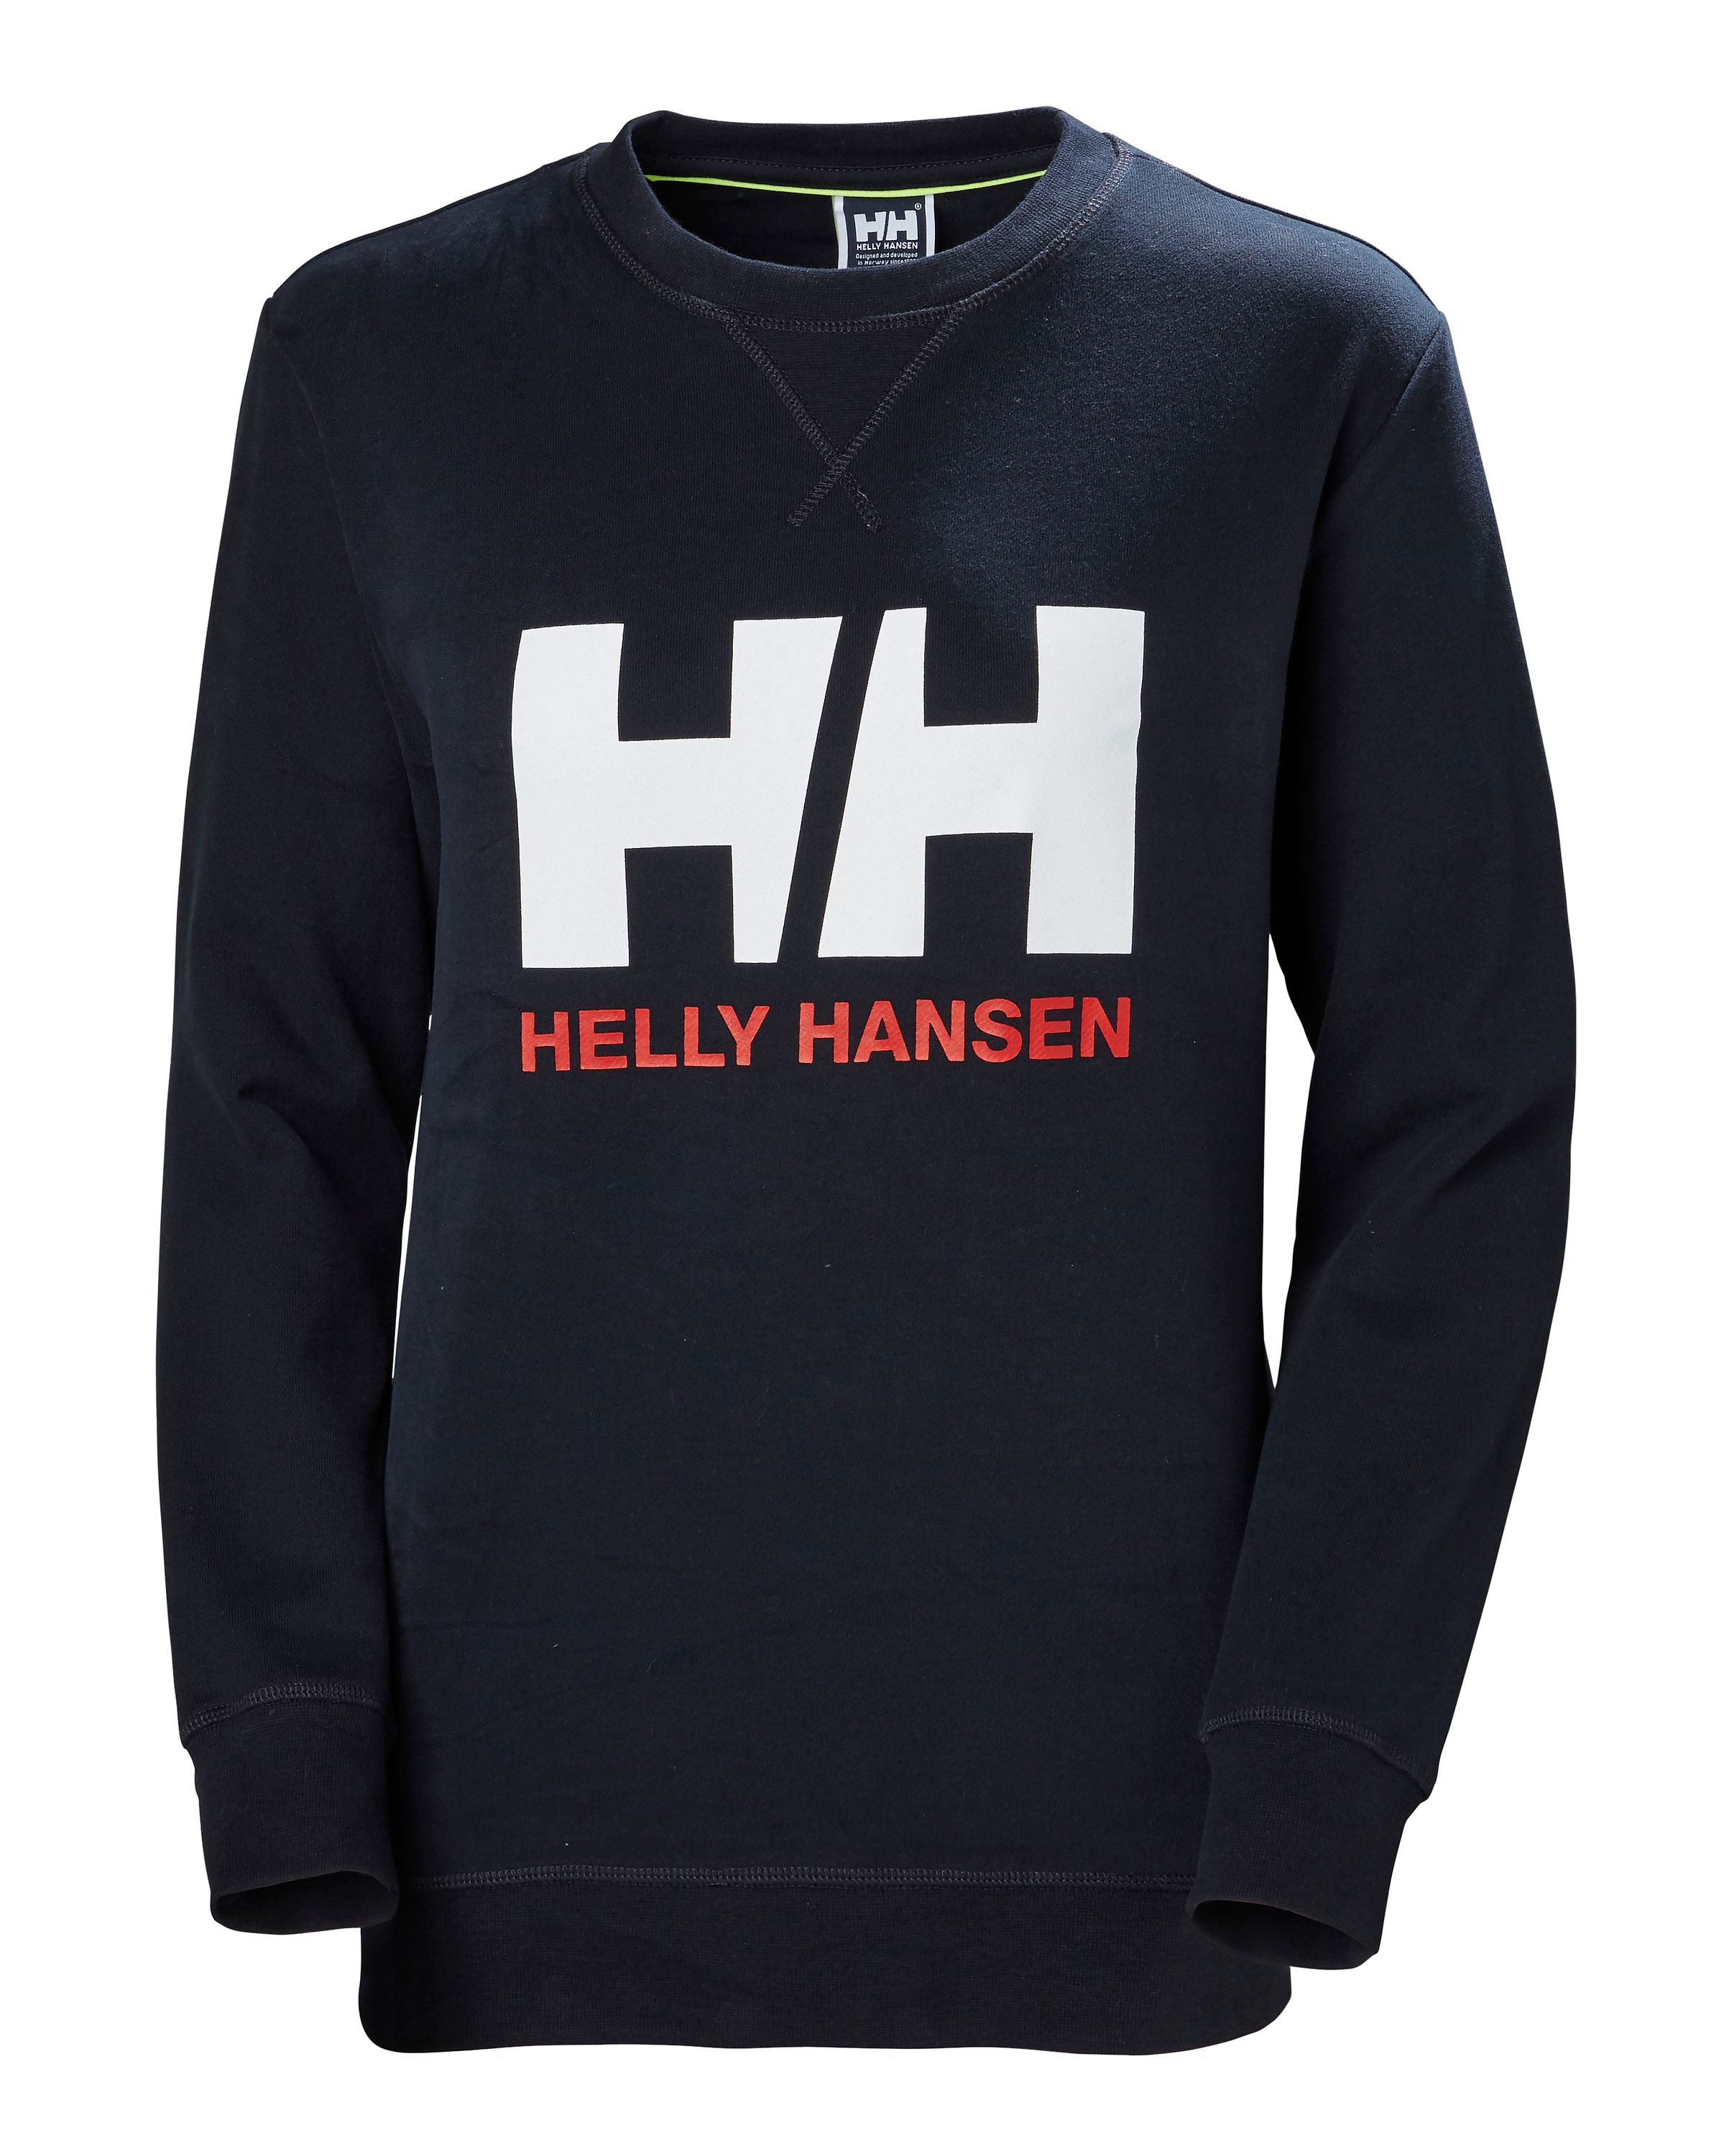 Helly hansen sweatshirt crew navy strl m